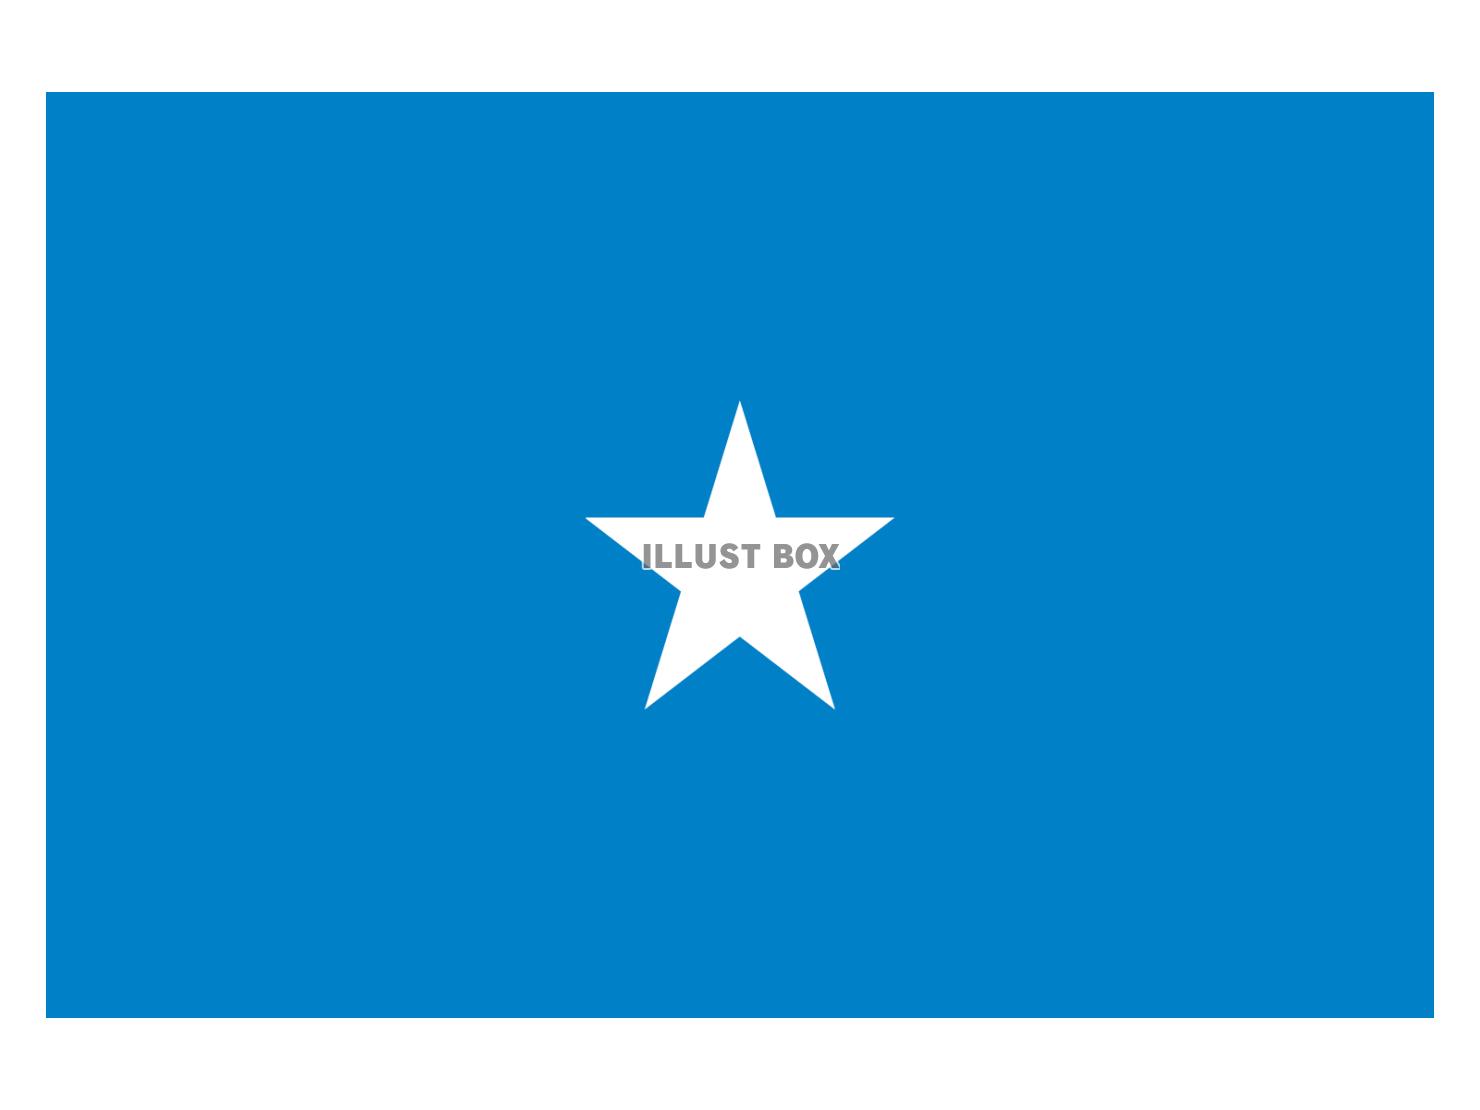 ソマリア連邦共和国の国旗イラストフリー素材